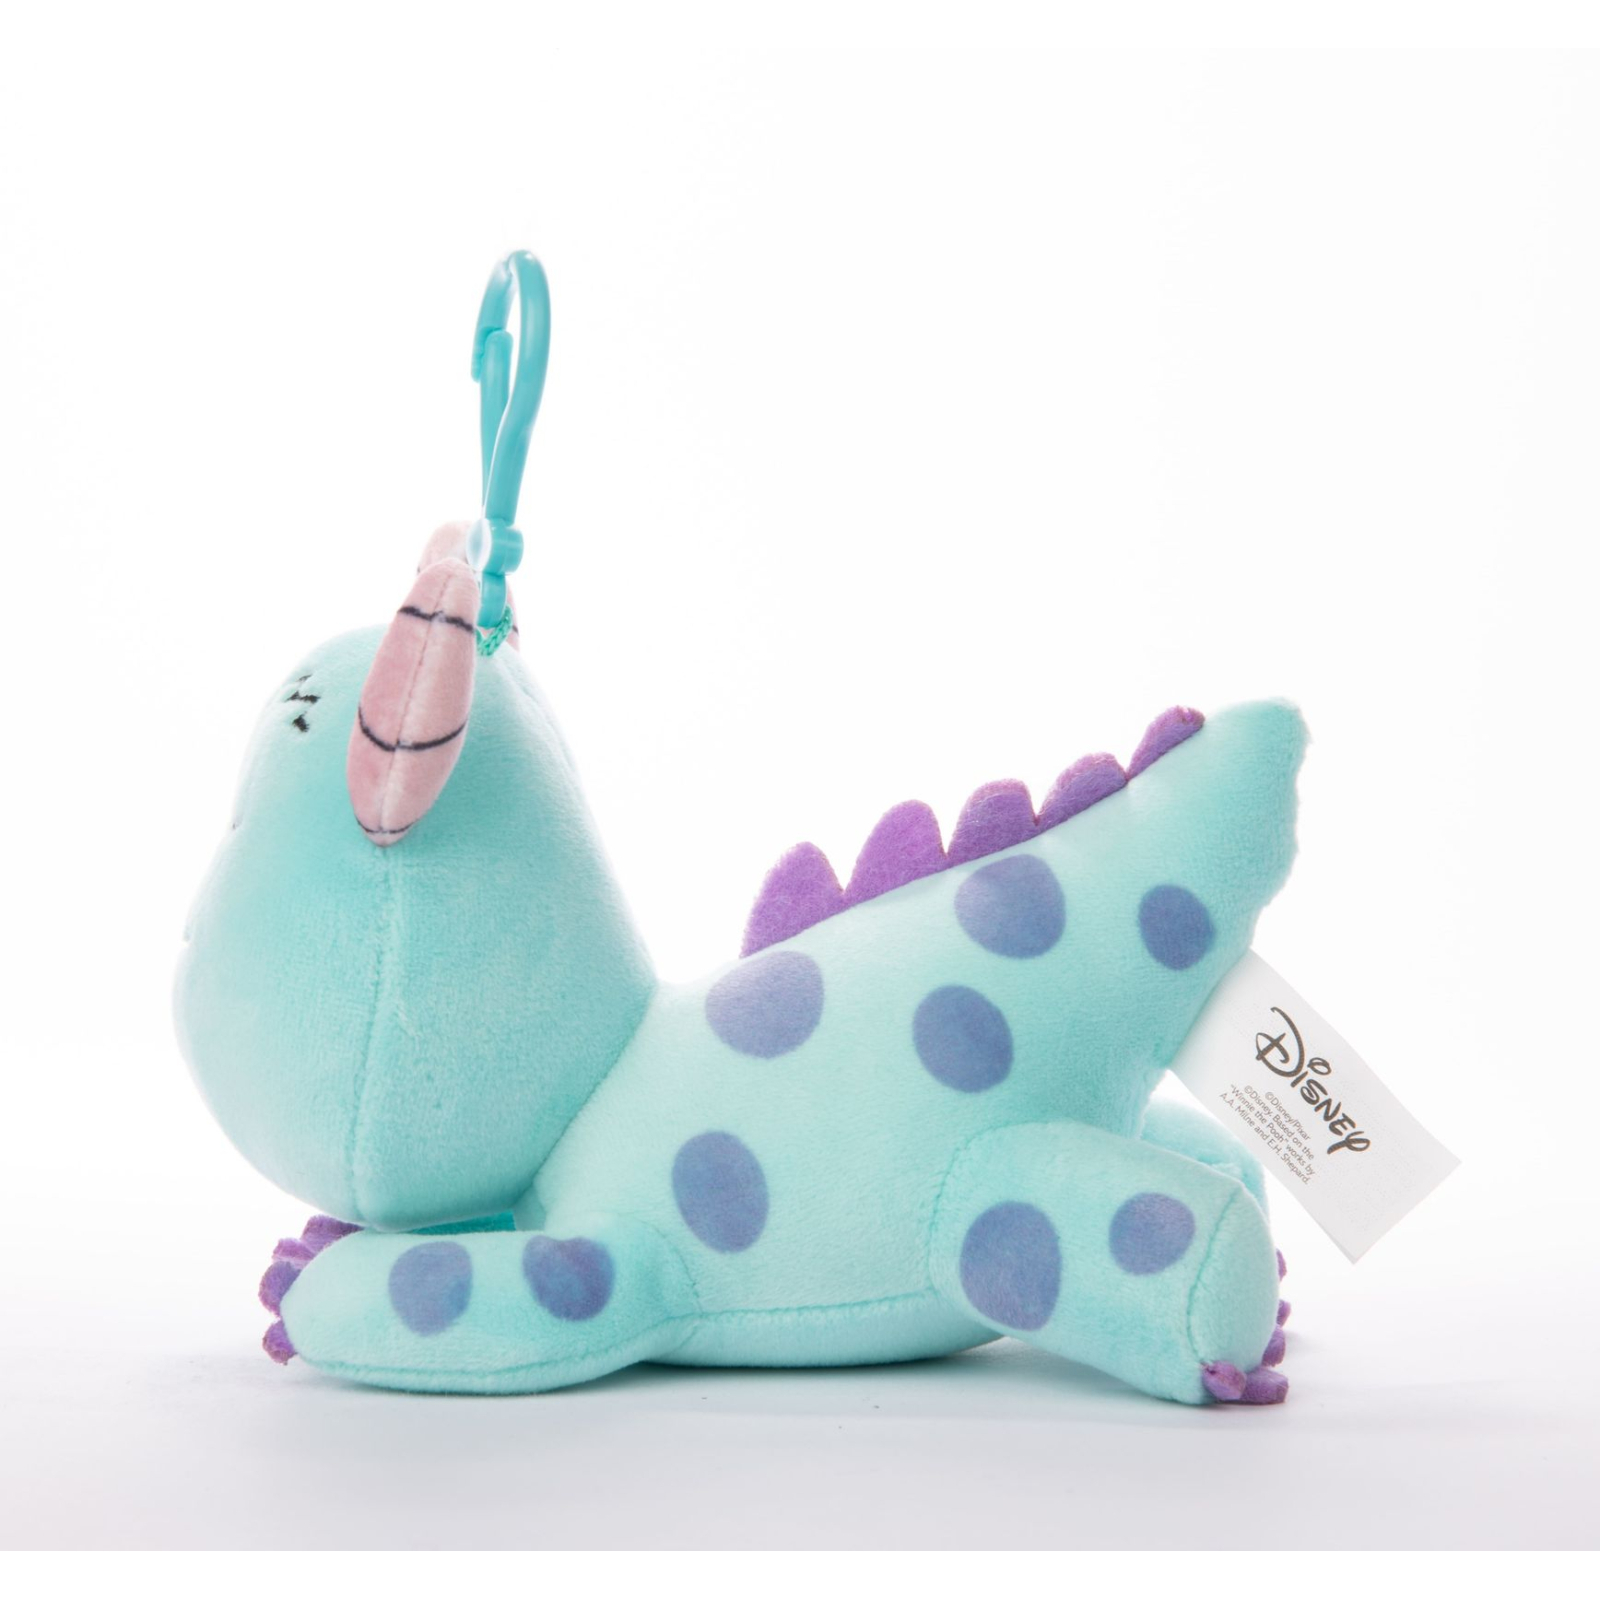 Мягкая игрушка Sambro Disney Collectible мягконабивная Snuglets монстр Салли с клипсой 13 см (DSG-9429-4) изображение 3